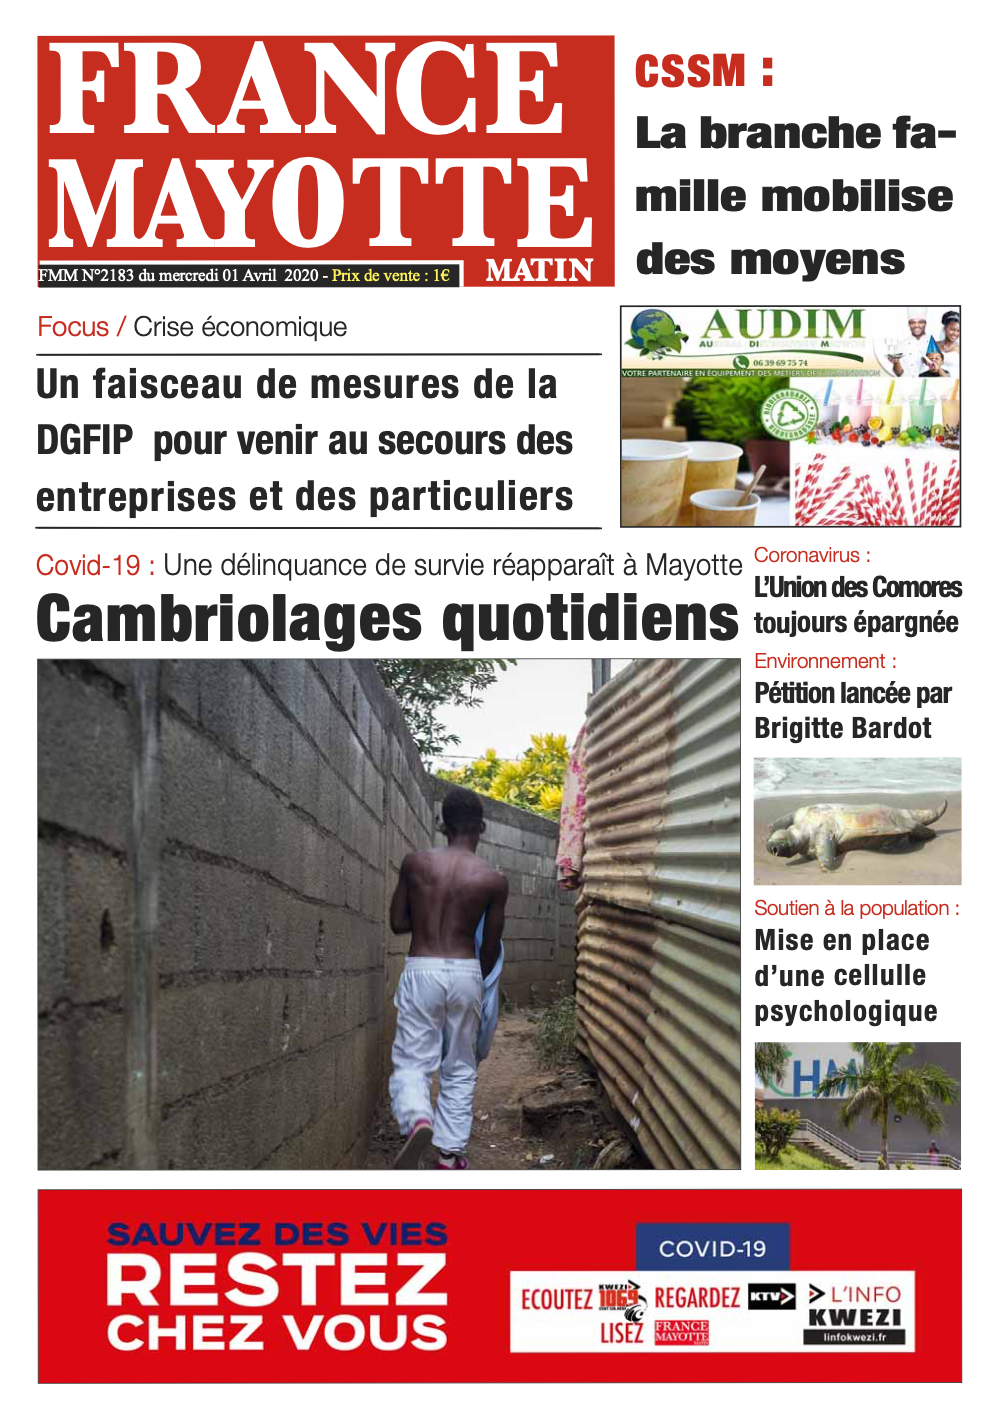 France Mayotte Mercredi 1er avril 2020